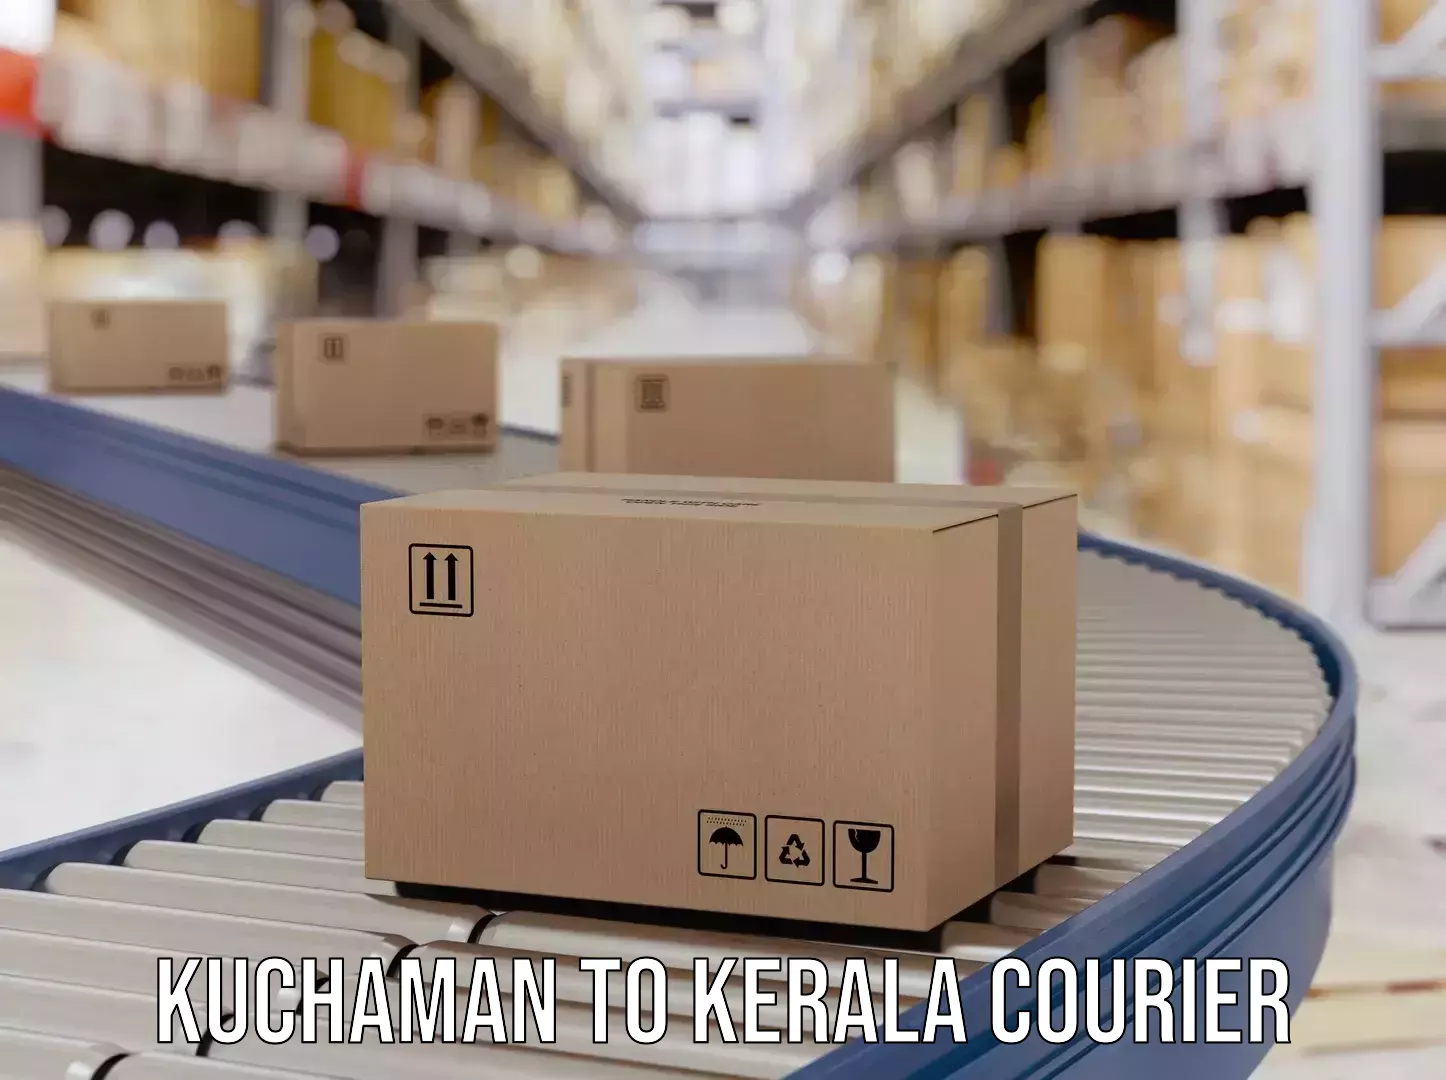 Return courier service Kuchaman to Kalanjoor